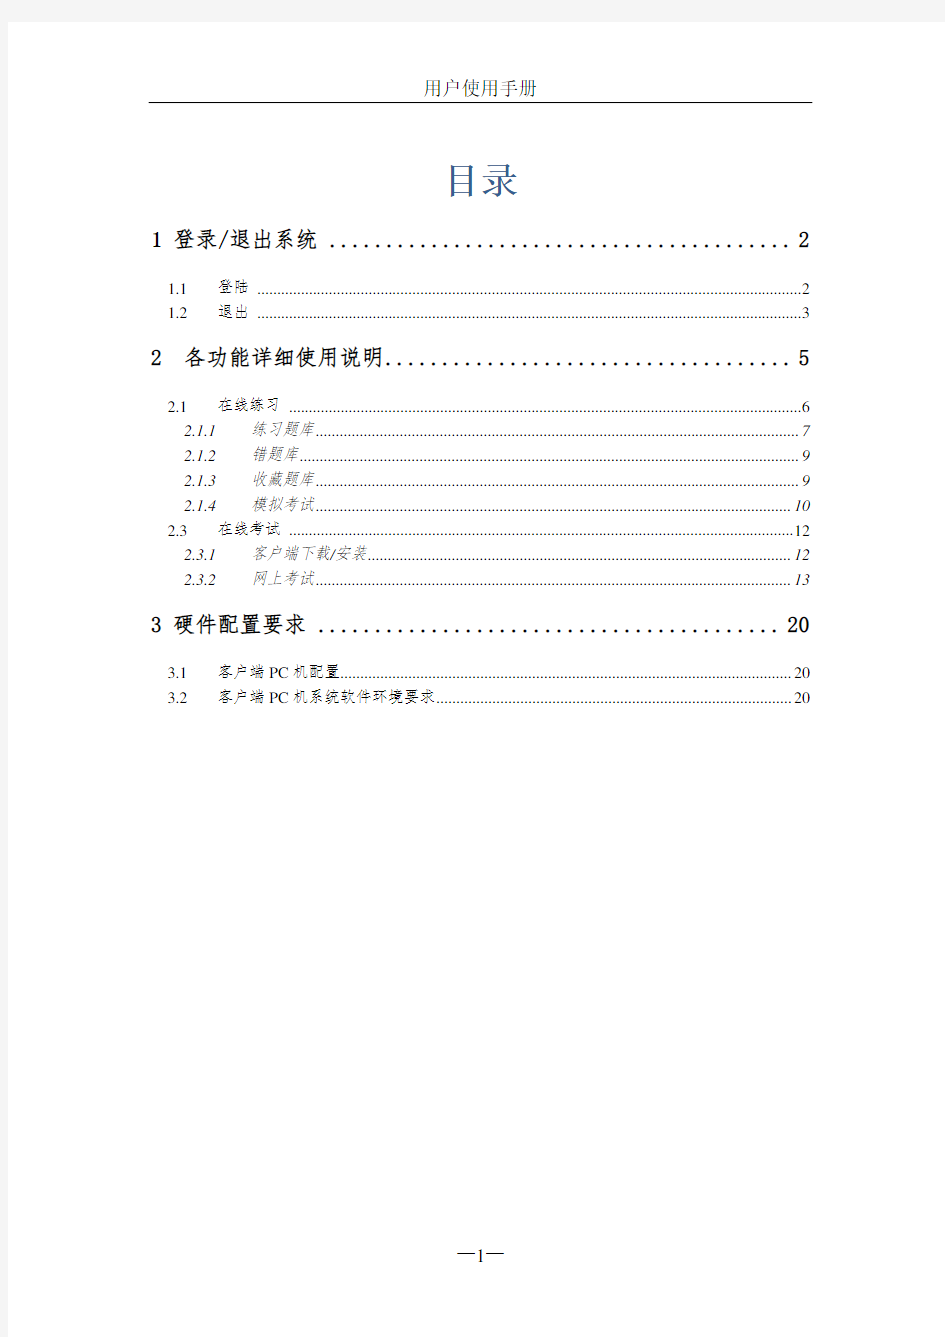 郑州大学现代远程教育学院 网上考试系统 用户使用手册